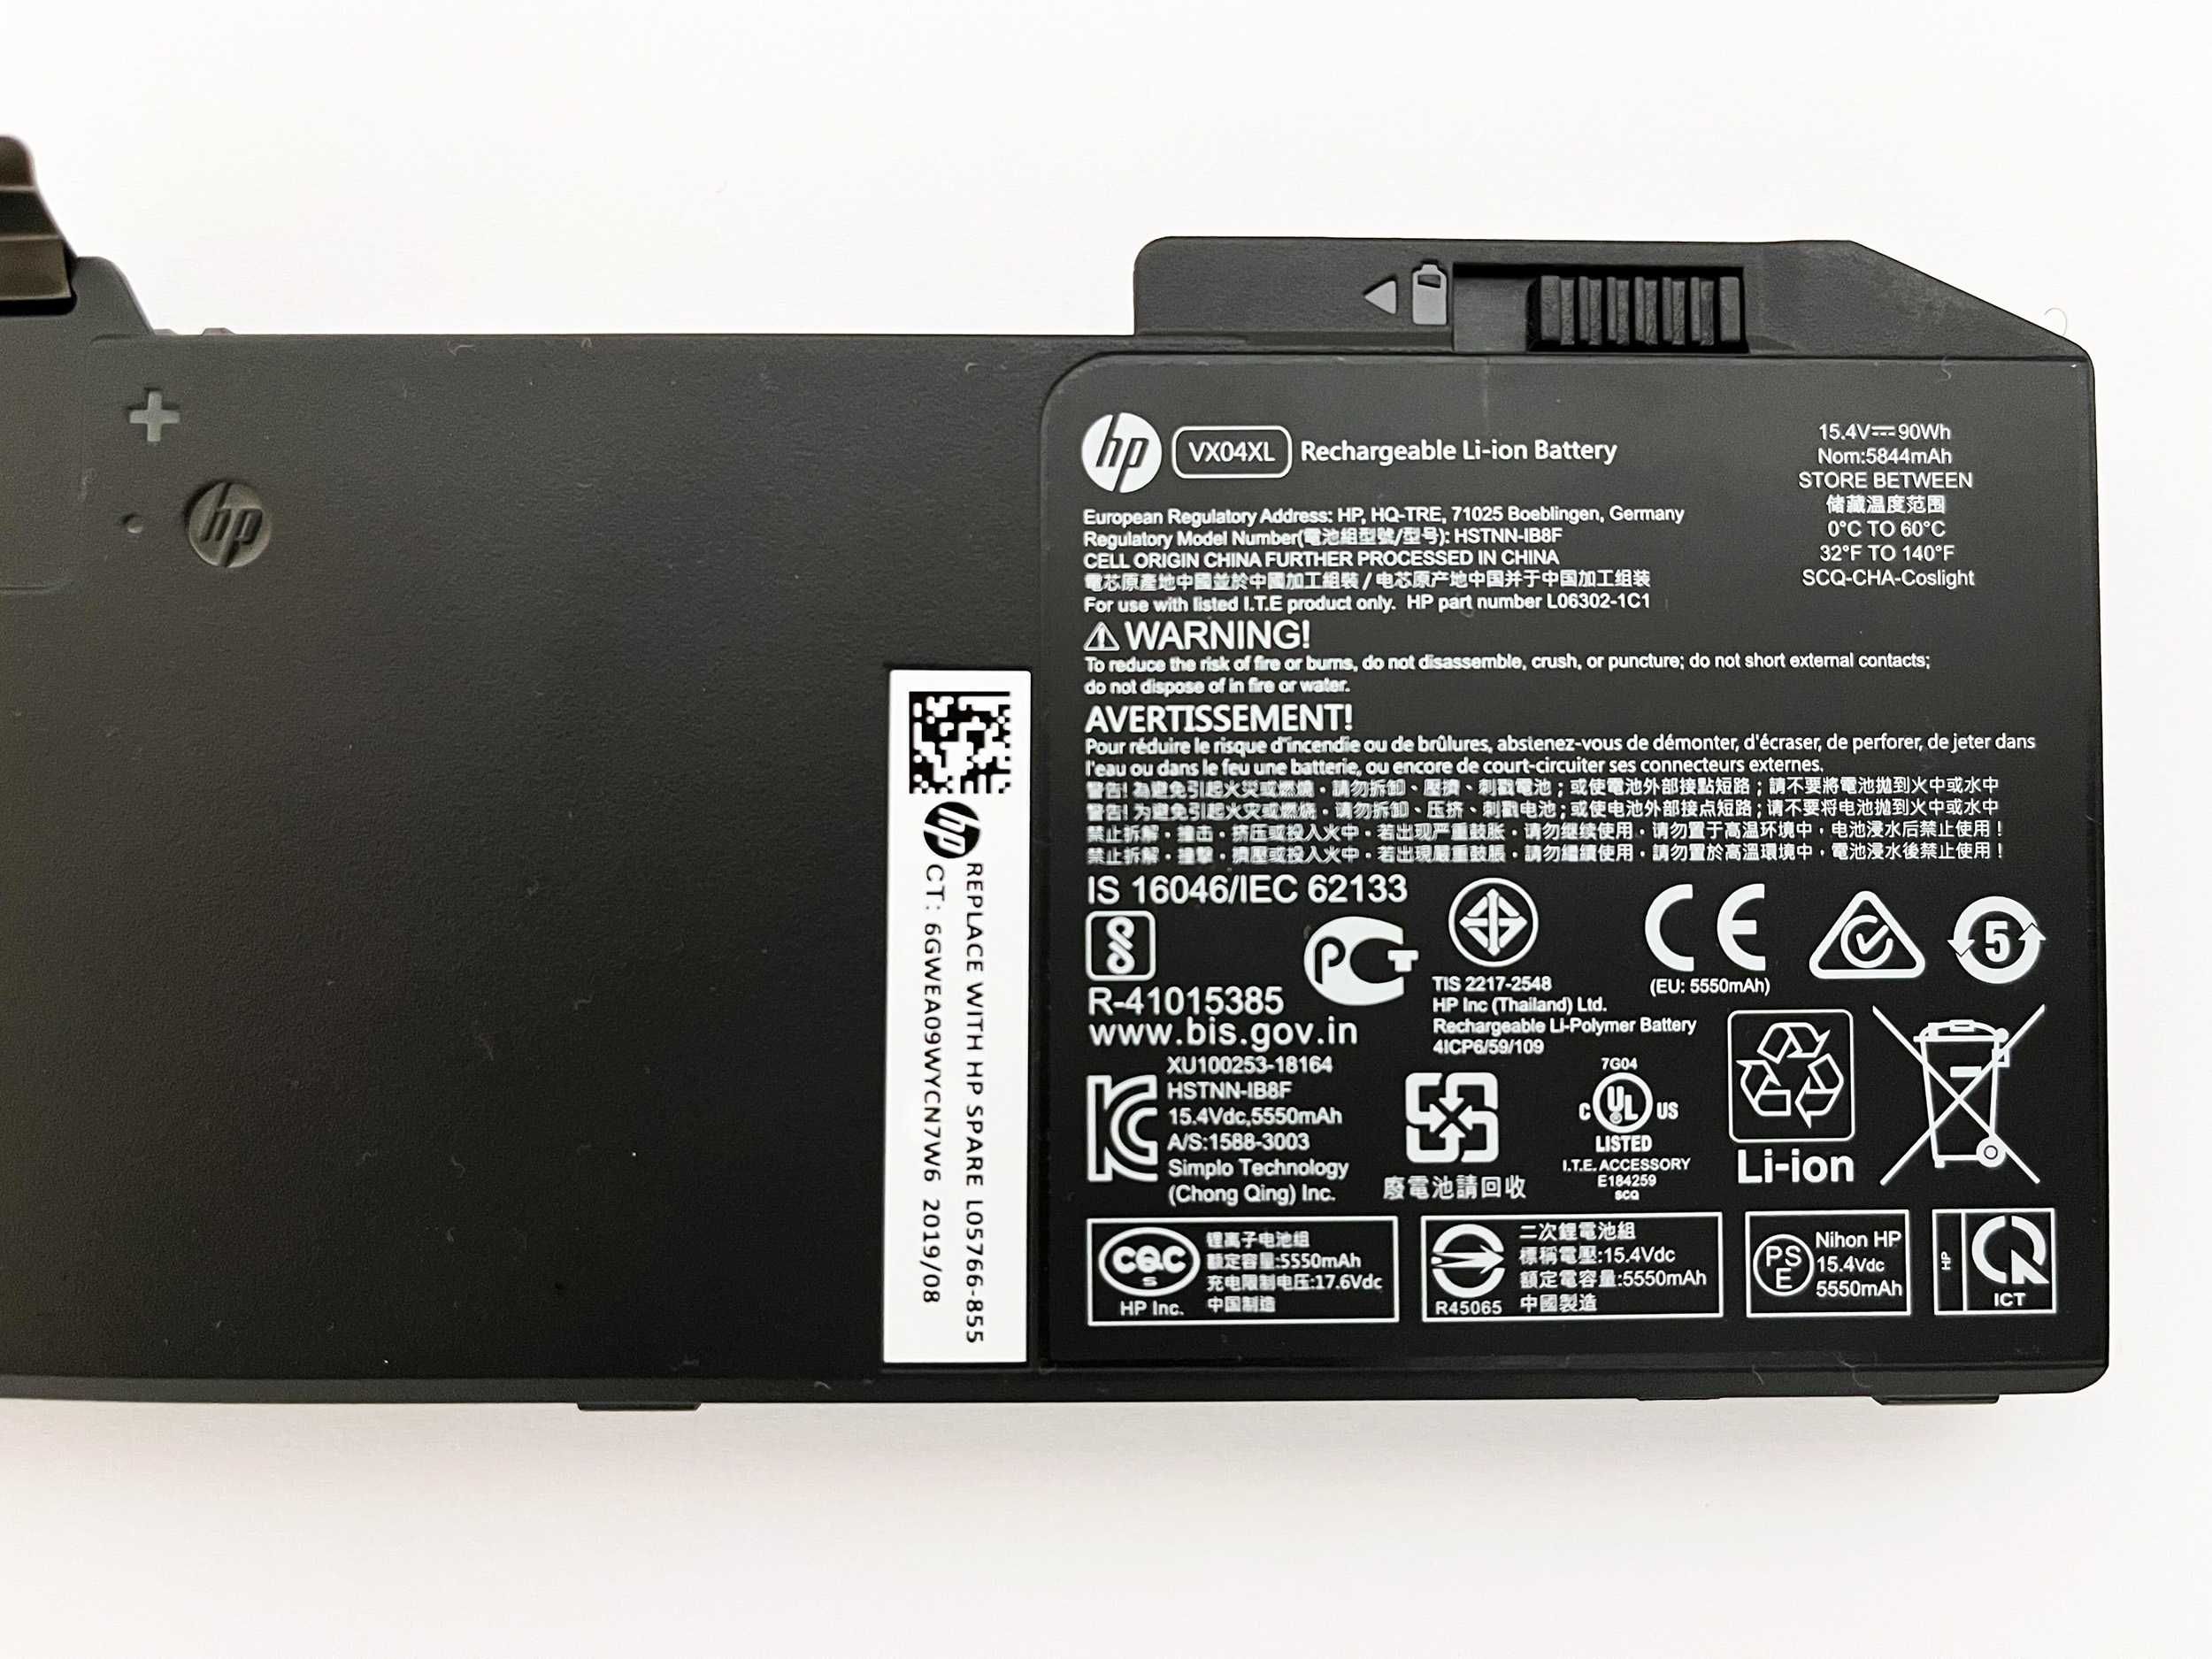 Baterie originala HP G6 Zbook, 90Wh, 5844mAh VX04XL